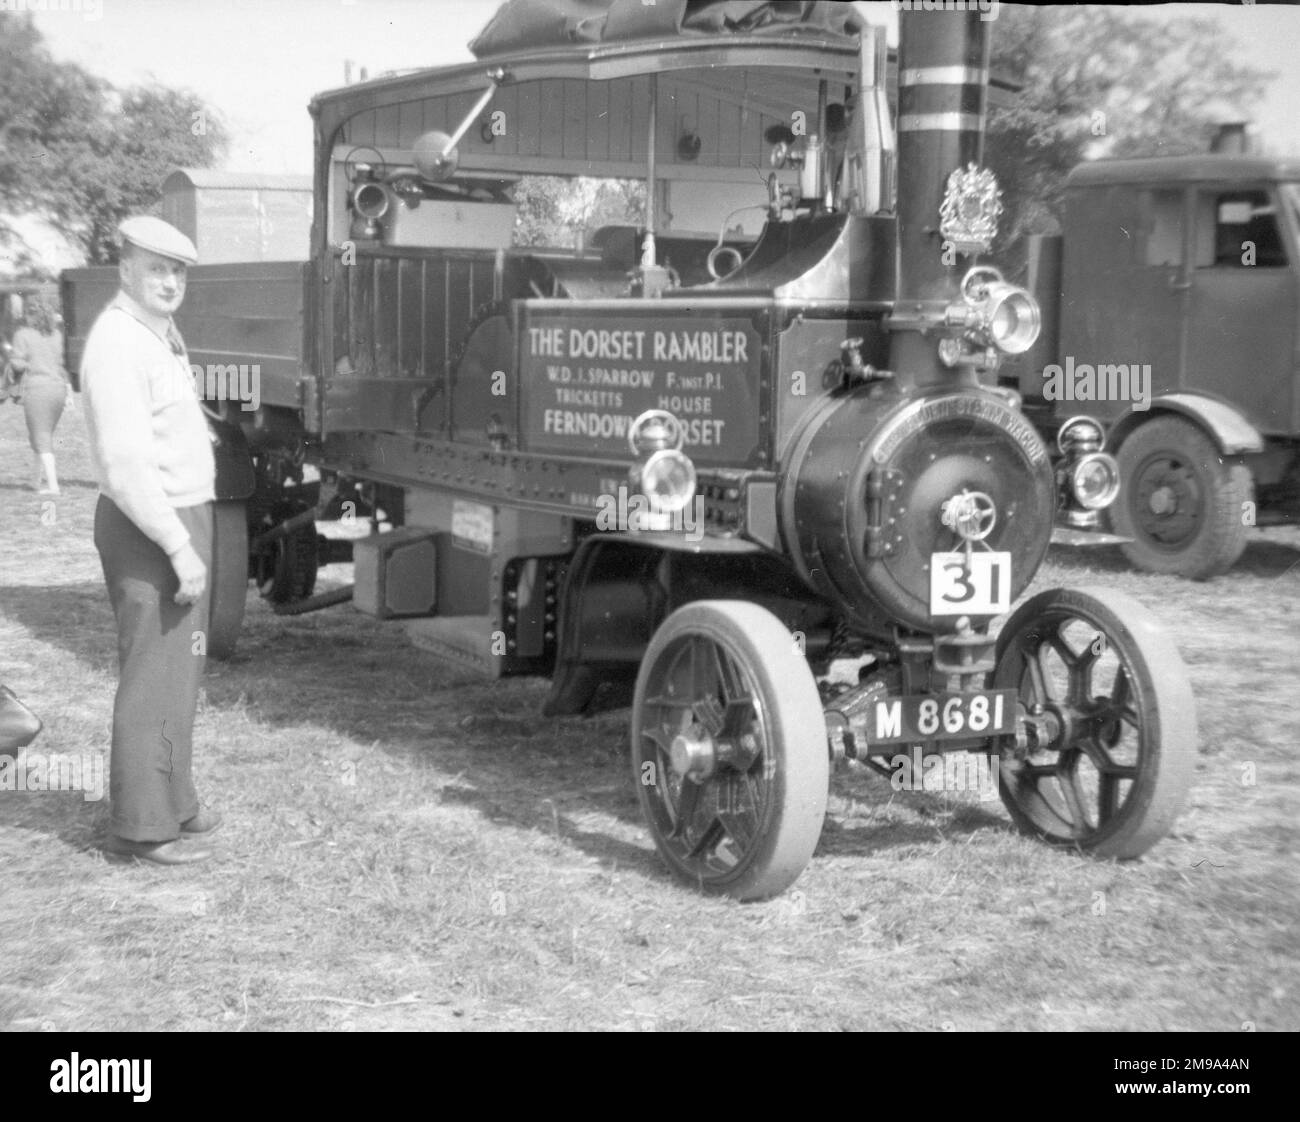 FODEN 5 Tonnen Dampfwagen M8681, gebaut in1916, bei der 1959 Andover Steam Rally. (FODEN Trucks war ein britisches Lkw- und Busunternehmen, das 1856 in Elworth bei Sandbach seinen Ursprung hatte.) Stockfoto